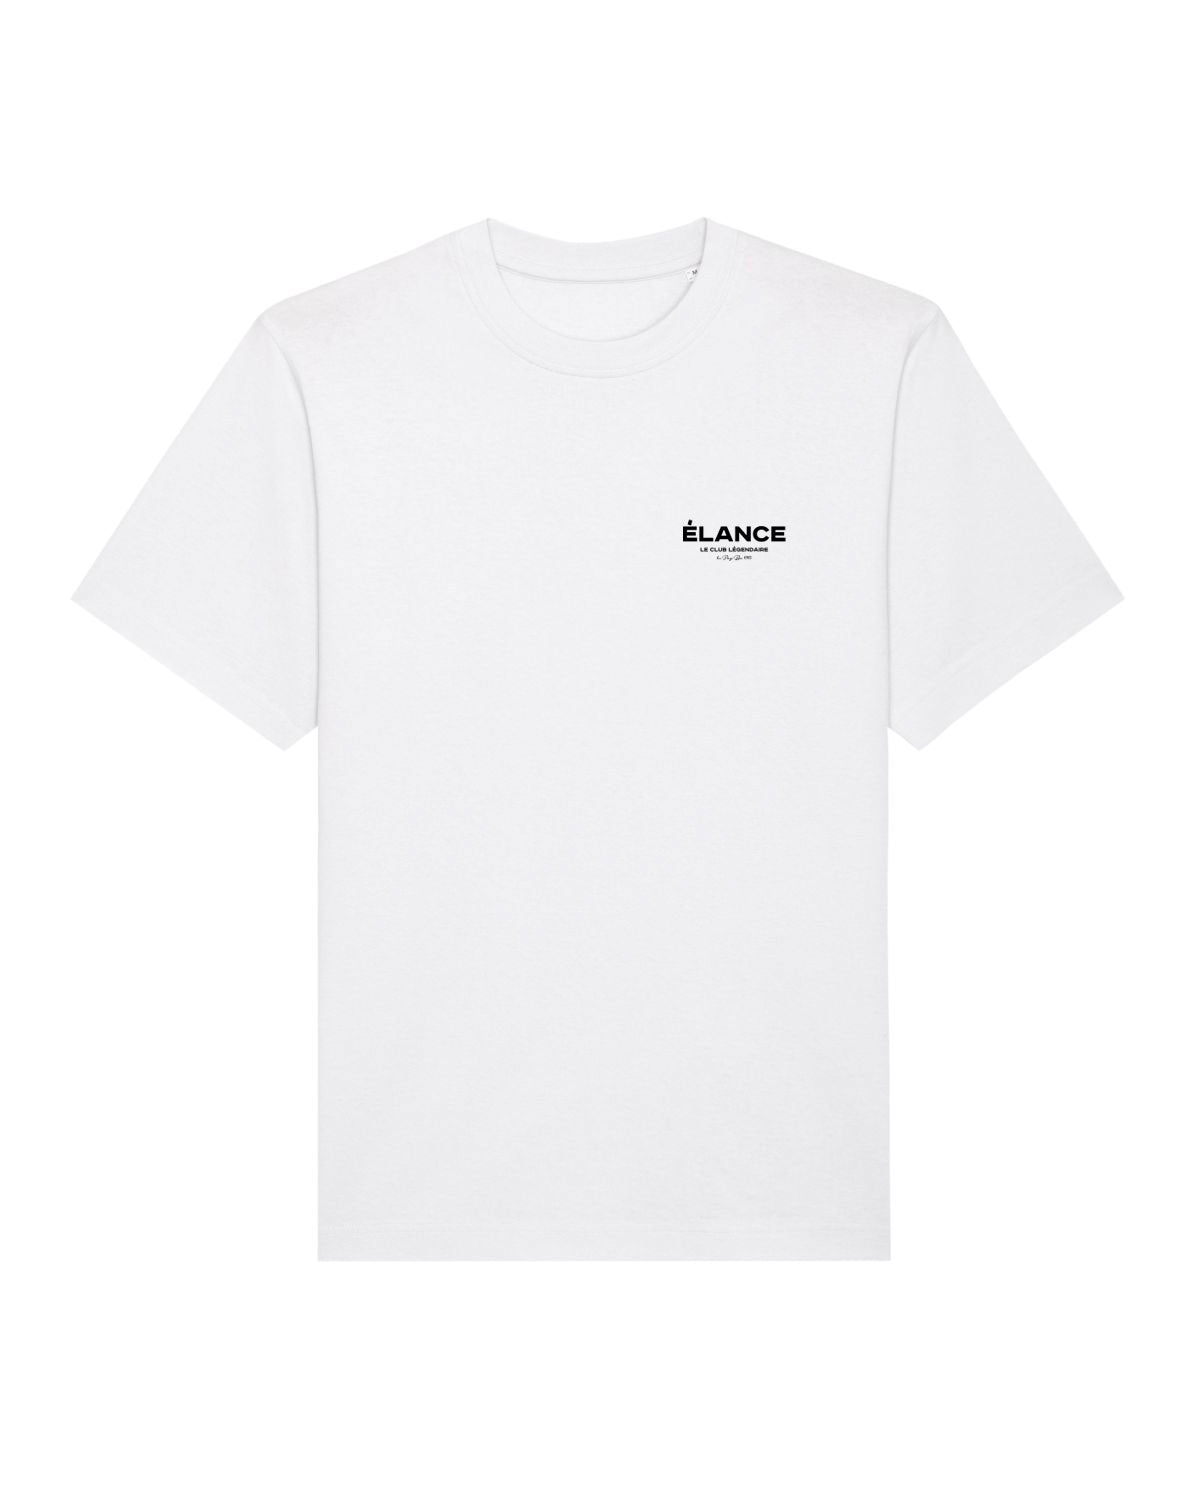 Le Club Légendaire T-Shirt White